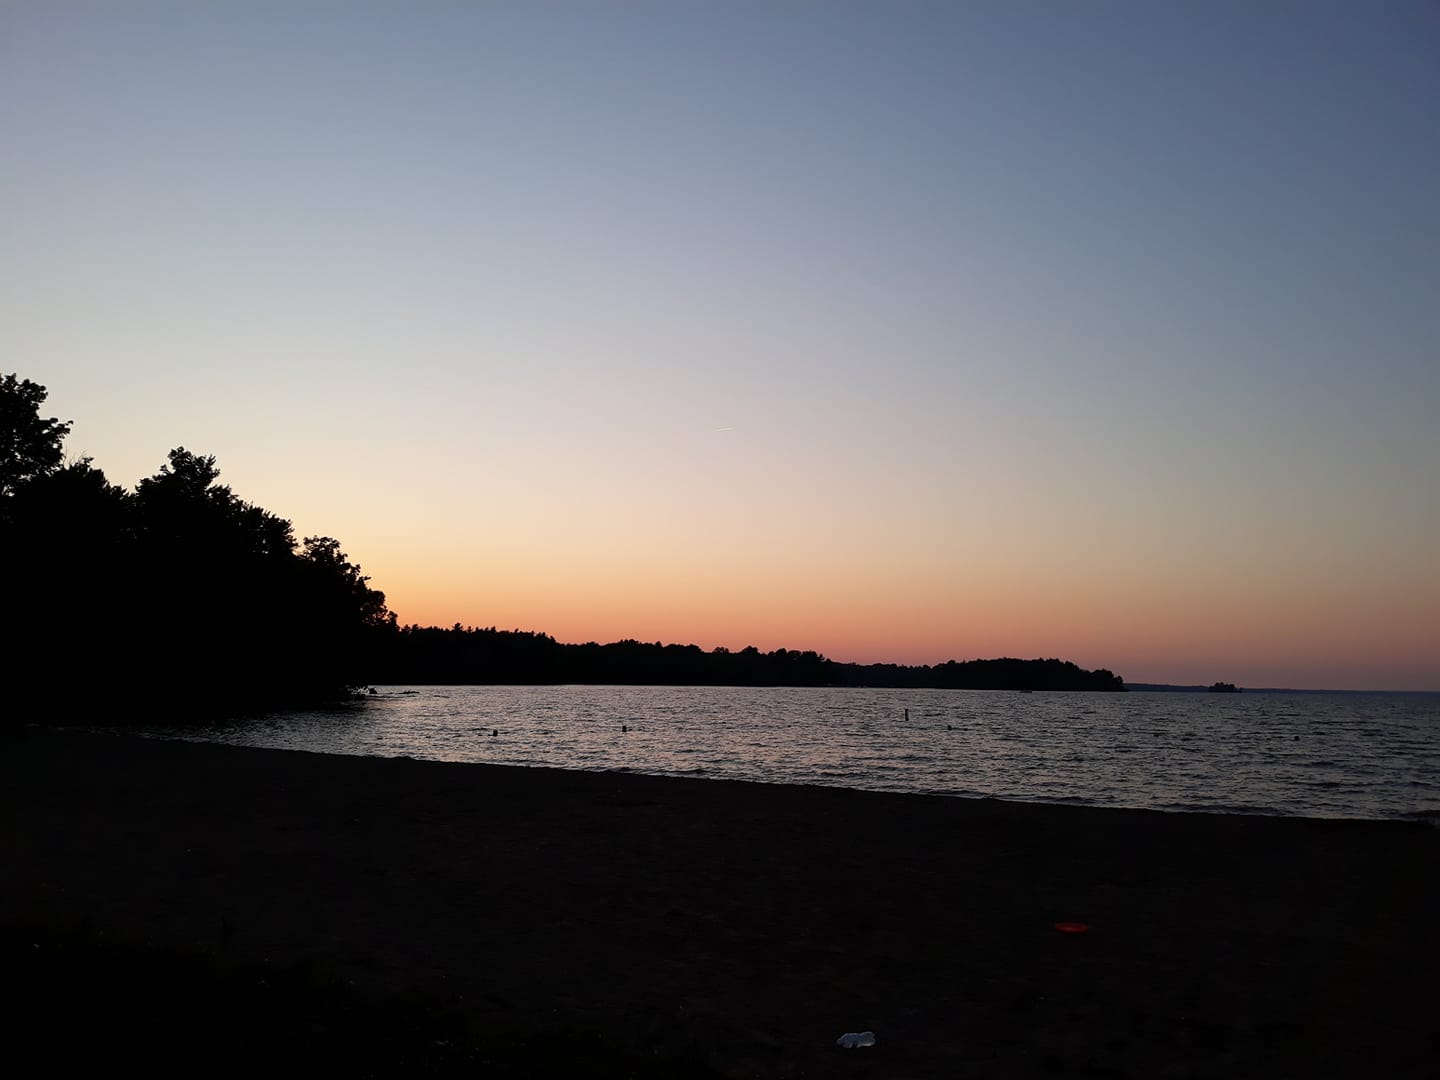 Lake Pymatuning beach area, at sunset.